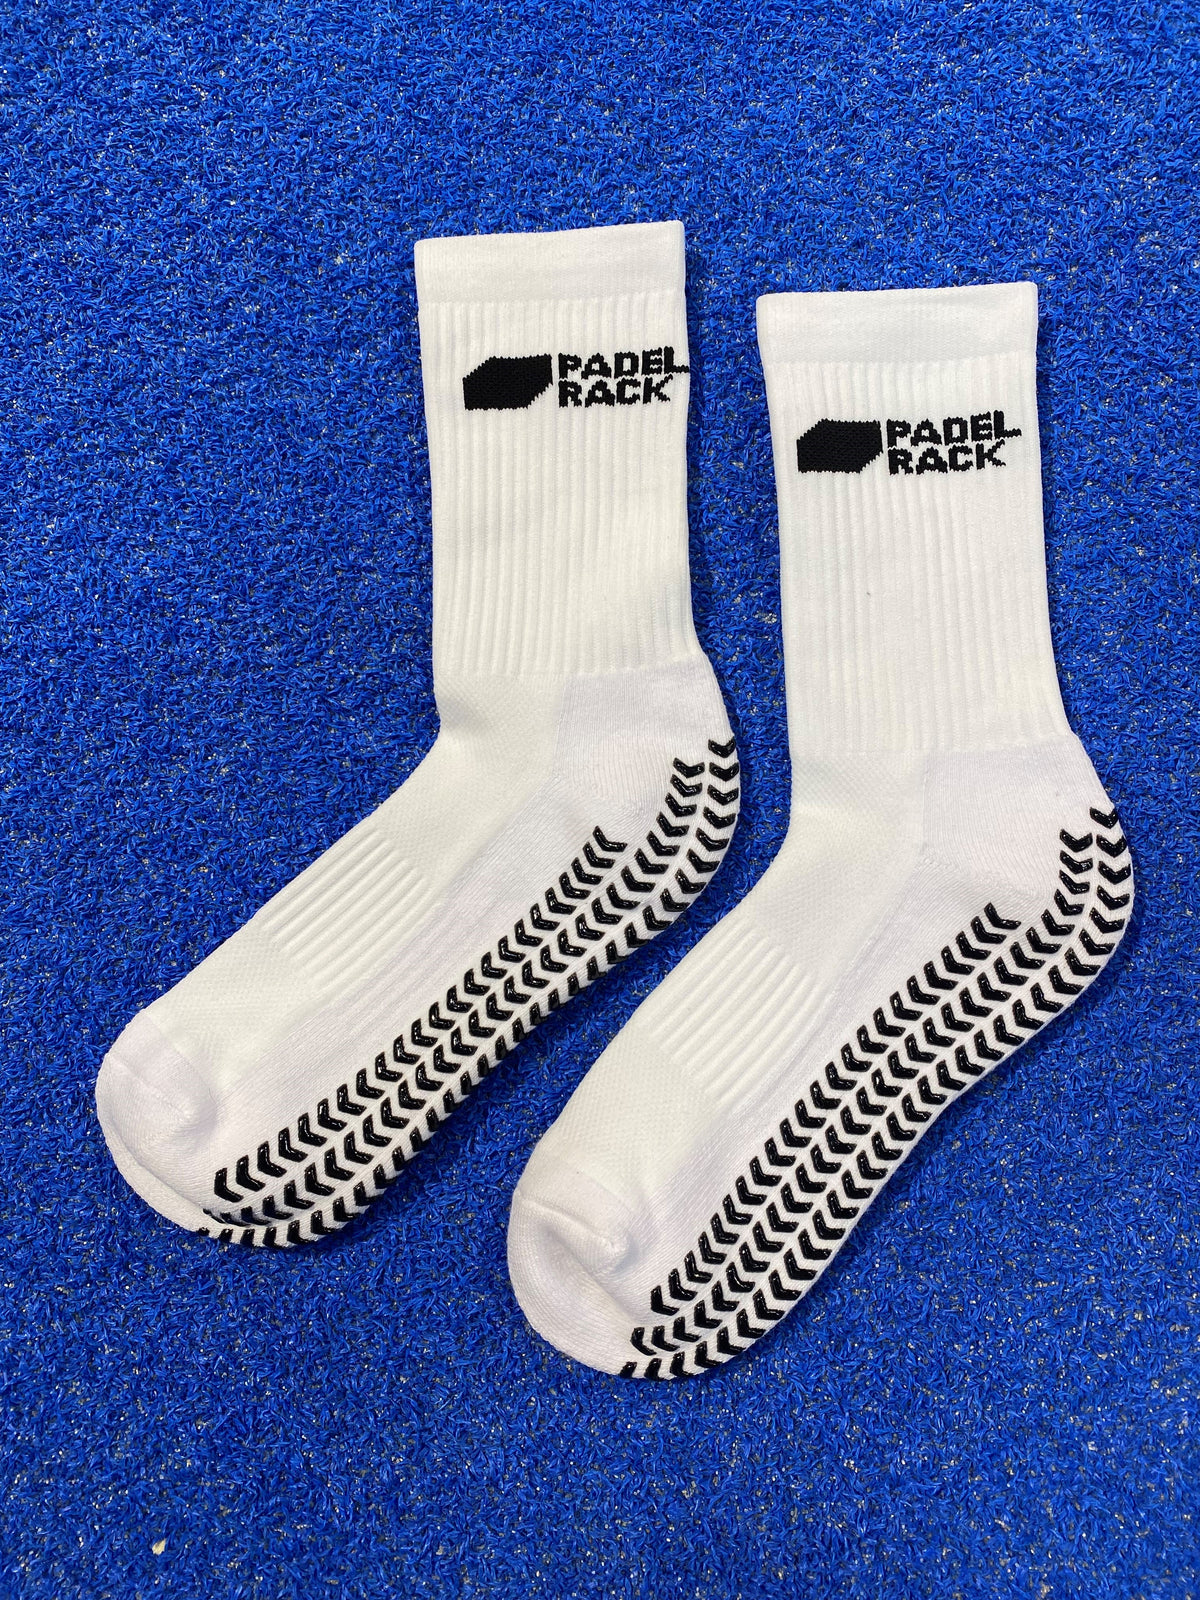 Padelrack Grip Socks - White - 3 Pack